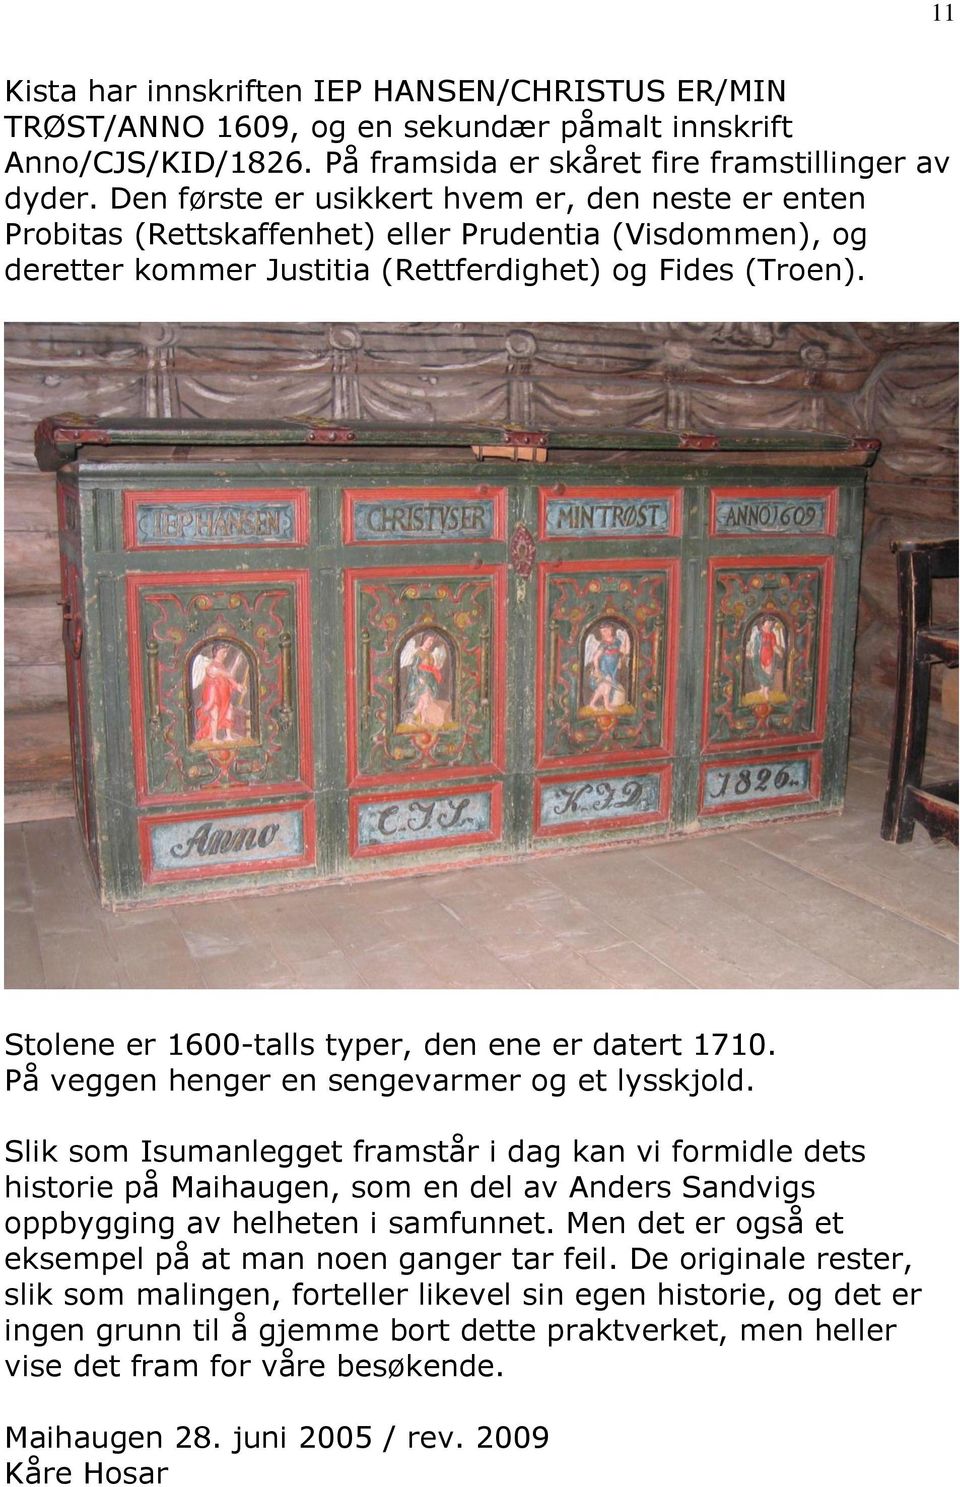 Stolene er 1600-talls typer, den ene er datert 1710. På veggen henger en sengevarmer og et lysskjold.